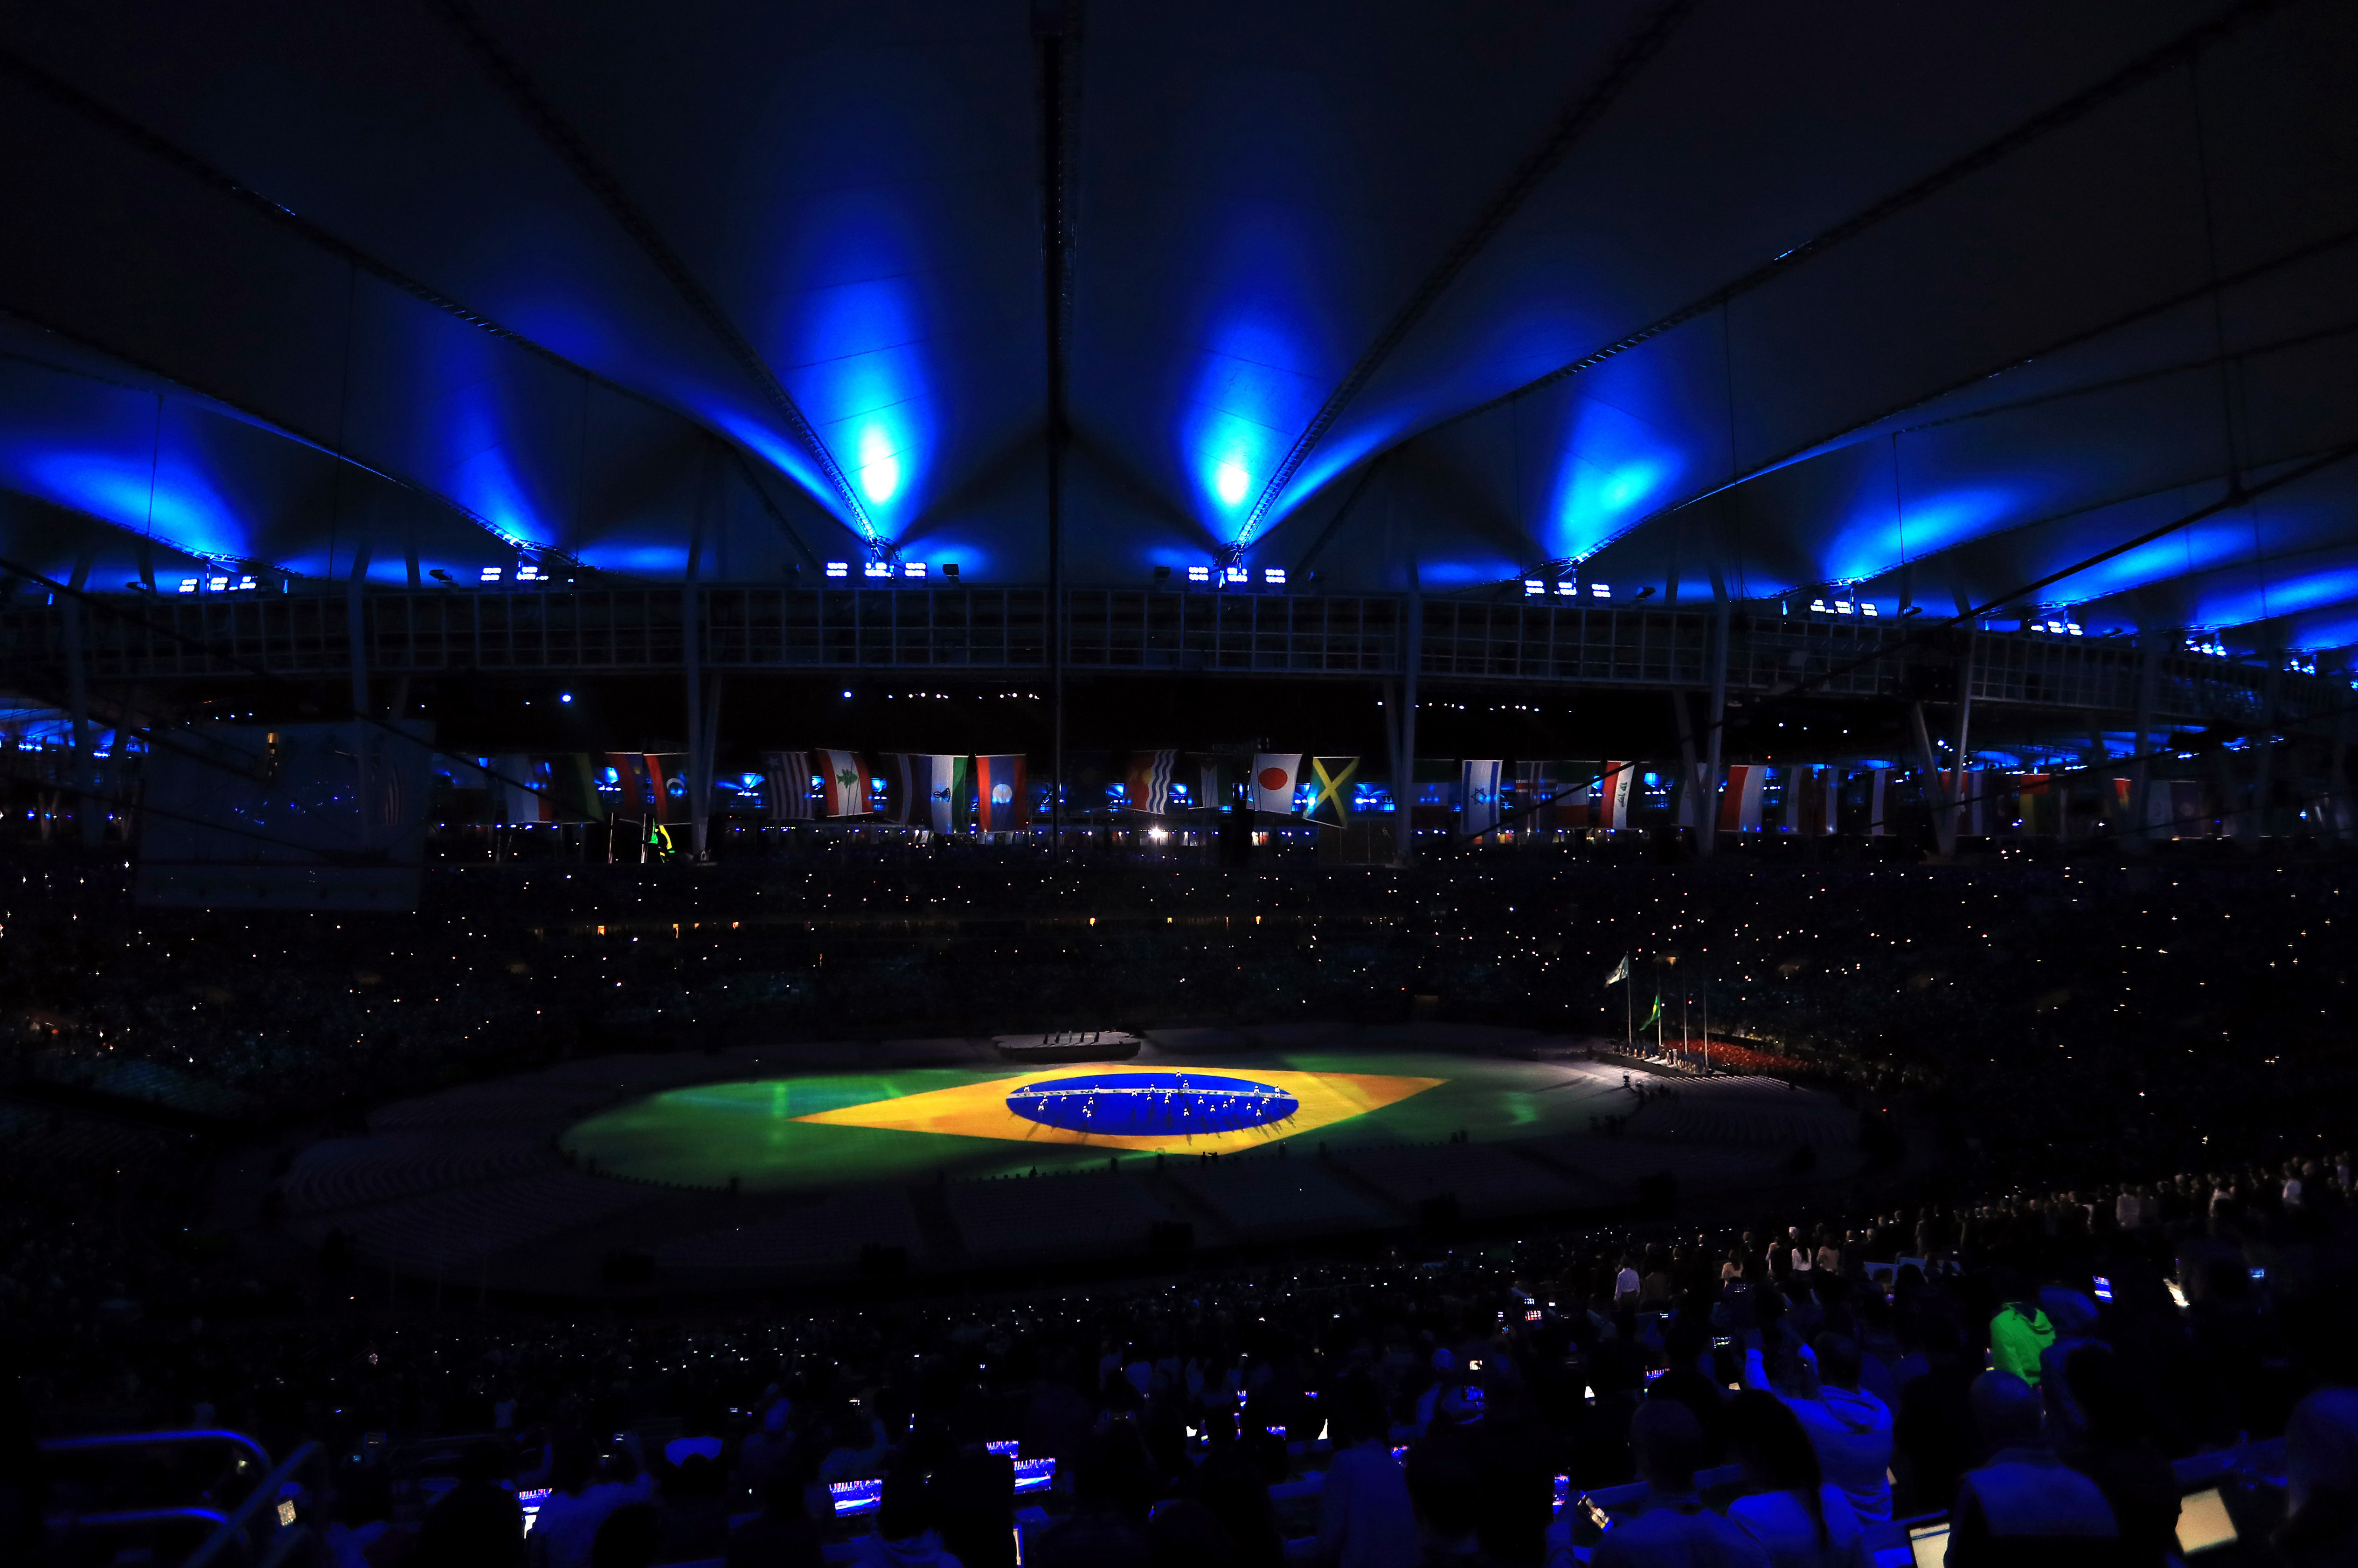  Brasileños piensan que Juegos Olímpicos hicieron más daño que bien a su país